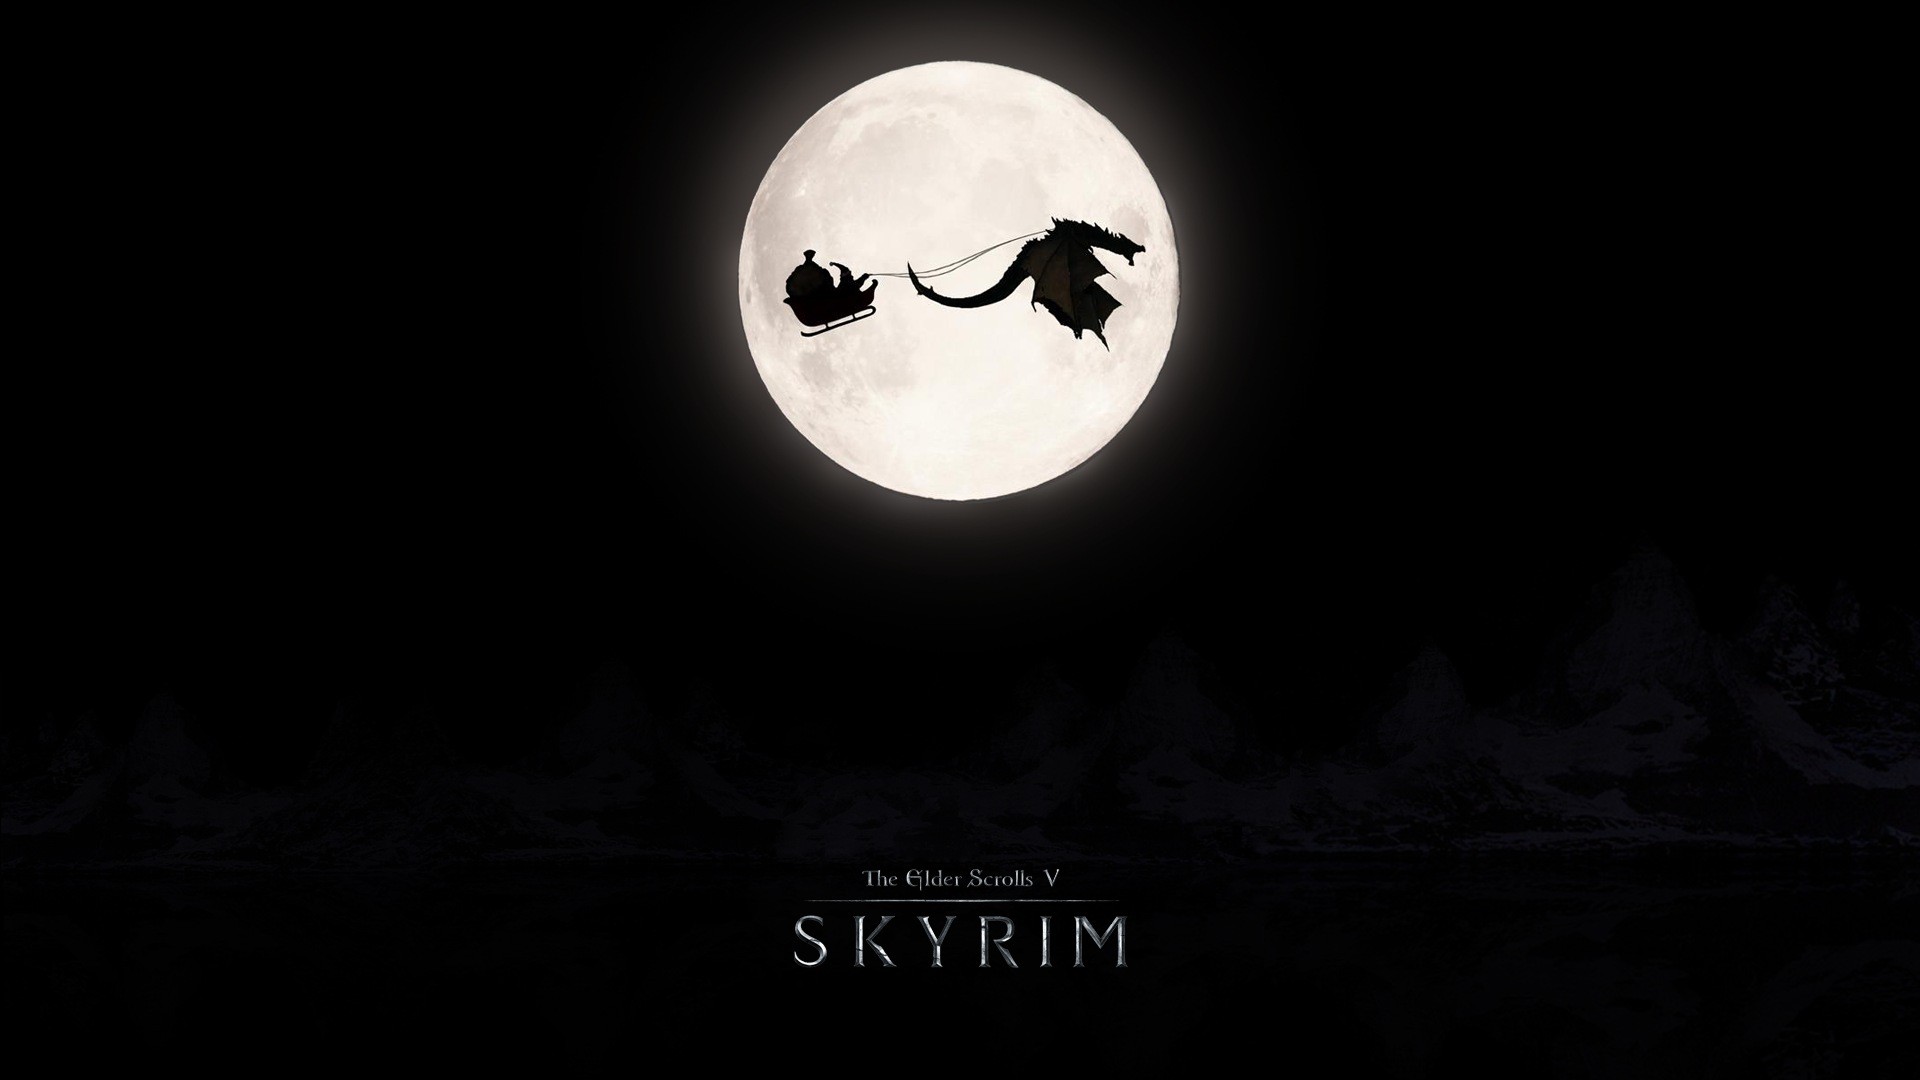 The Elder Scrolls V: Skyrim, Santa, Dragon, Moon Wallpaper